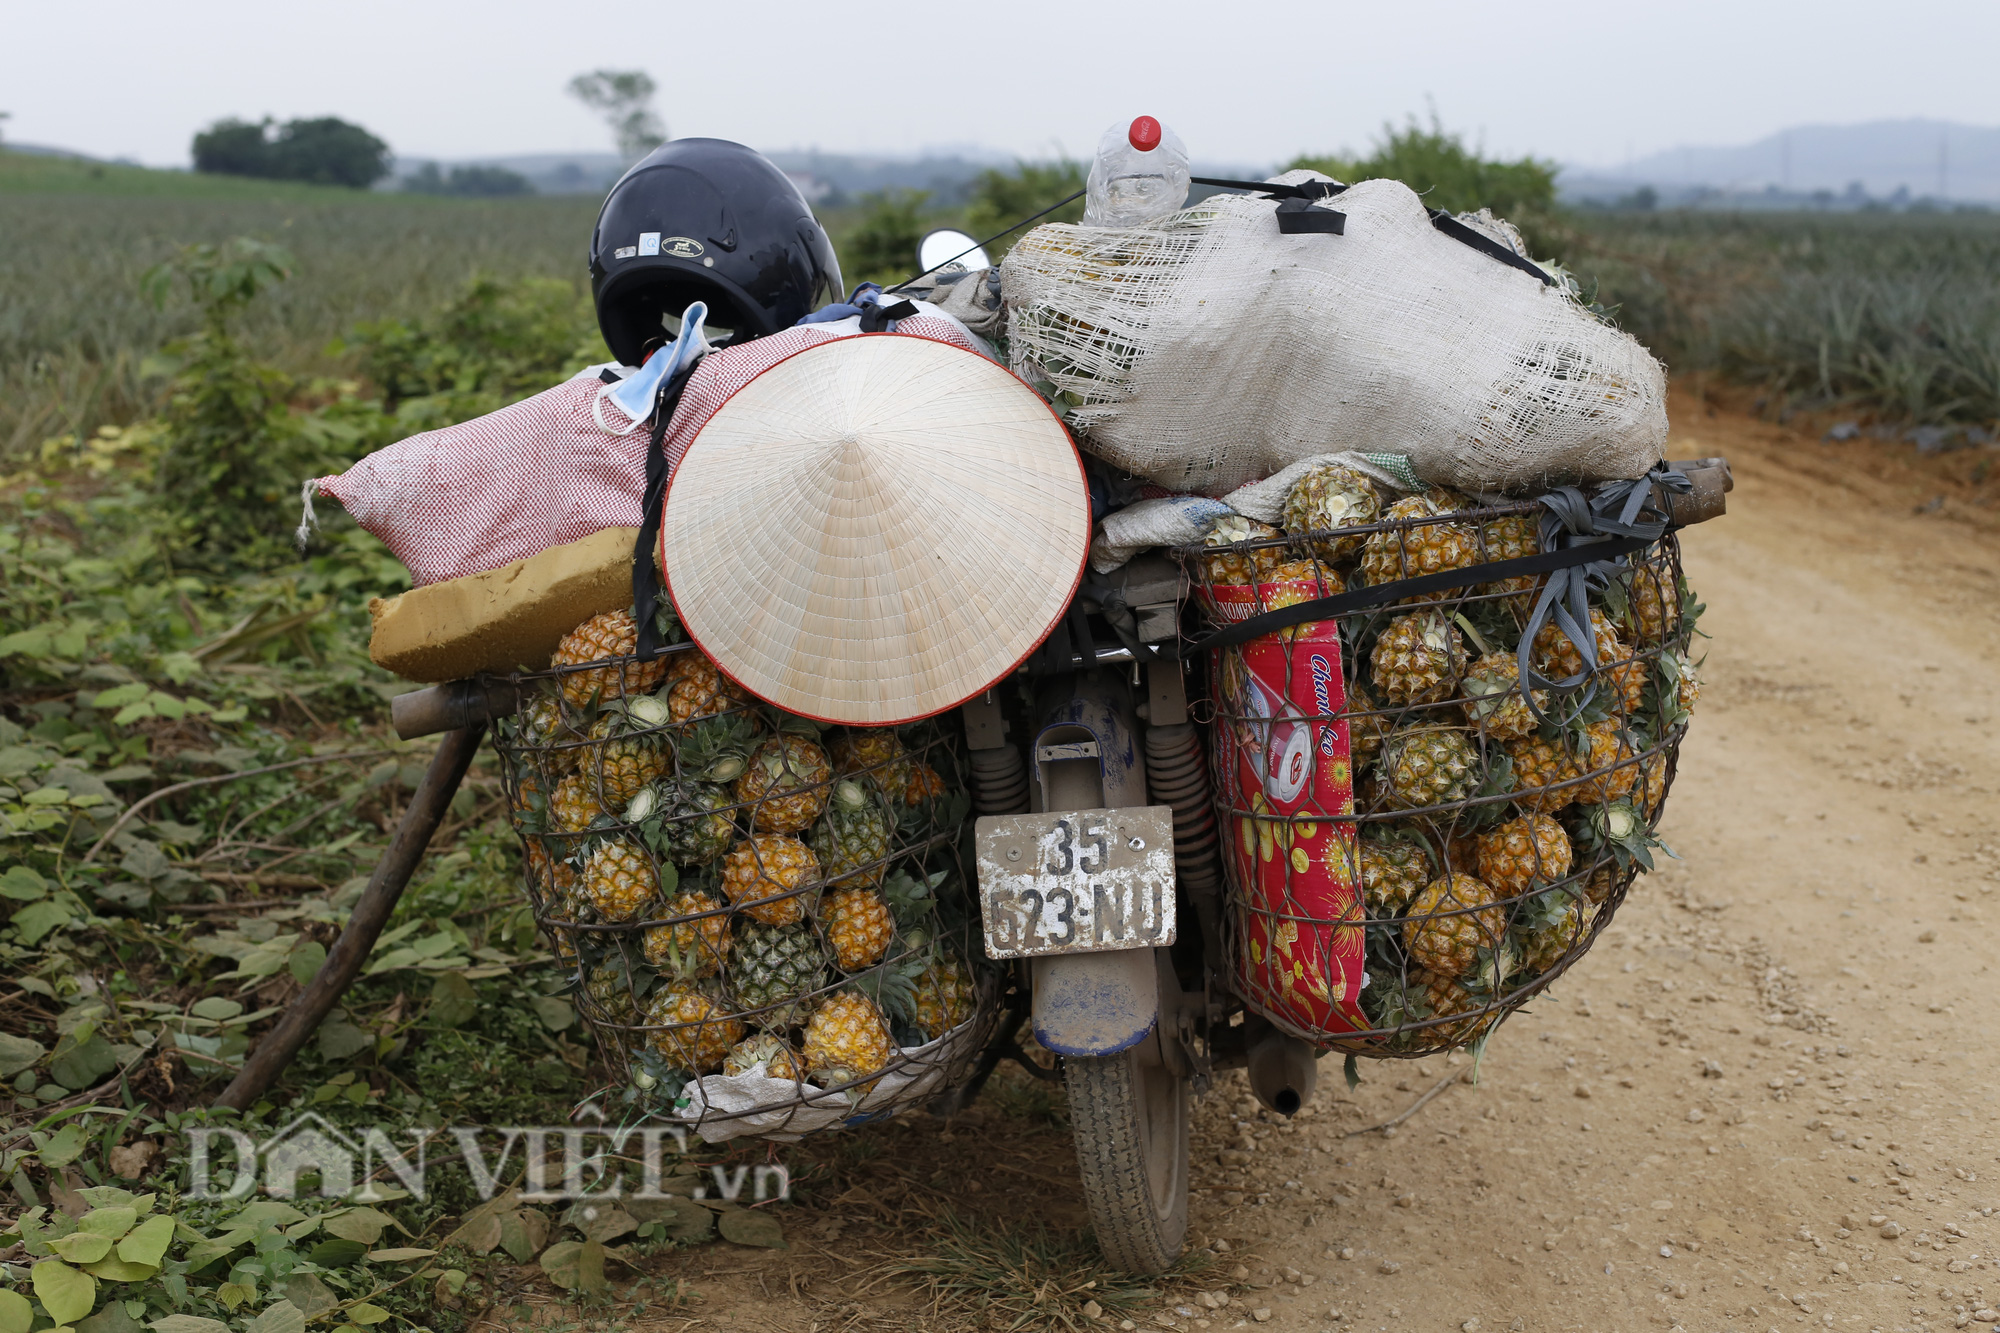 Thu “trái vàng” to, đẹp mã, thơm nức giá 5.000 -5.500 đồng/kg, nông dân xứ Thanh phấn khởi ra mặt - Ảnh 8.